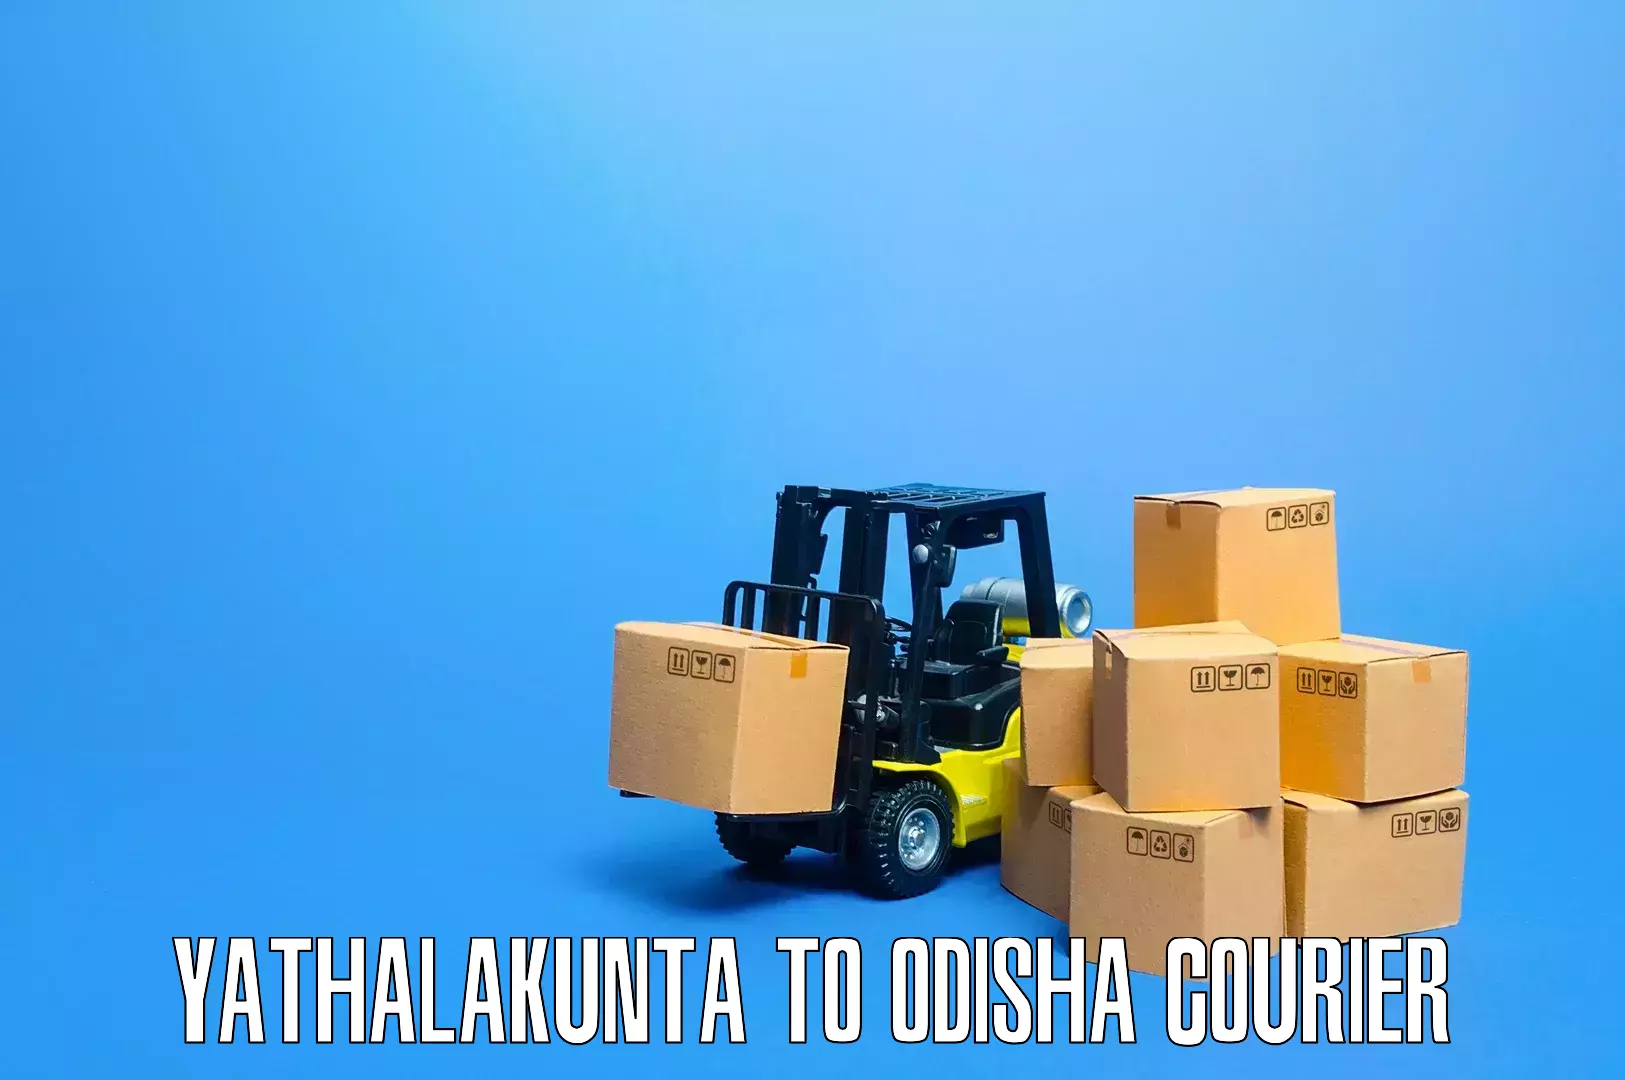 Home shifting services Yathalakunta to Odisha